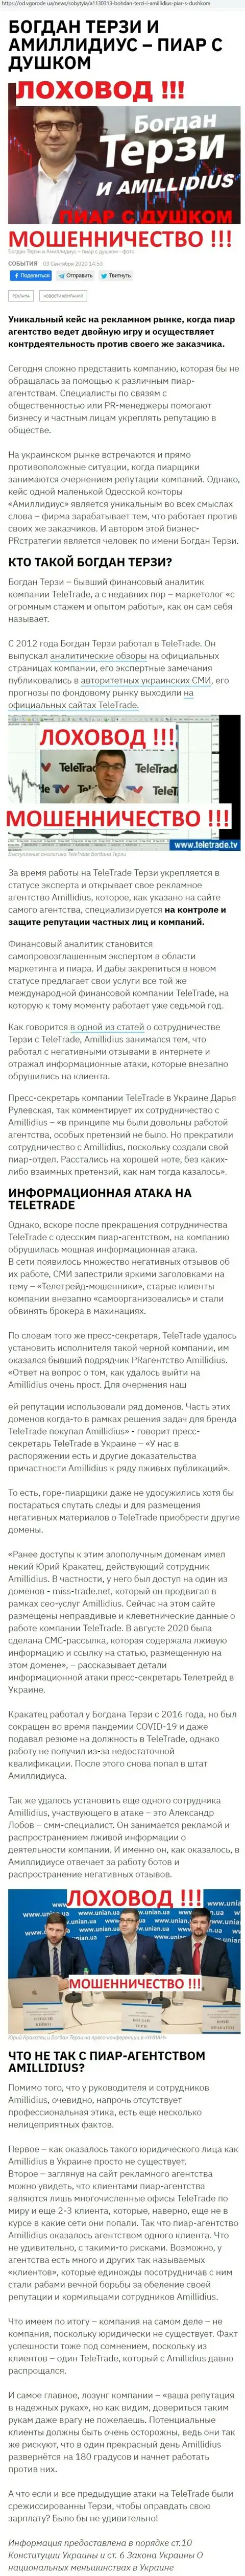 Богдан Терзи рискованный партнер, информация со слов бывшего сотрудника пиар организации Амиллидиус